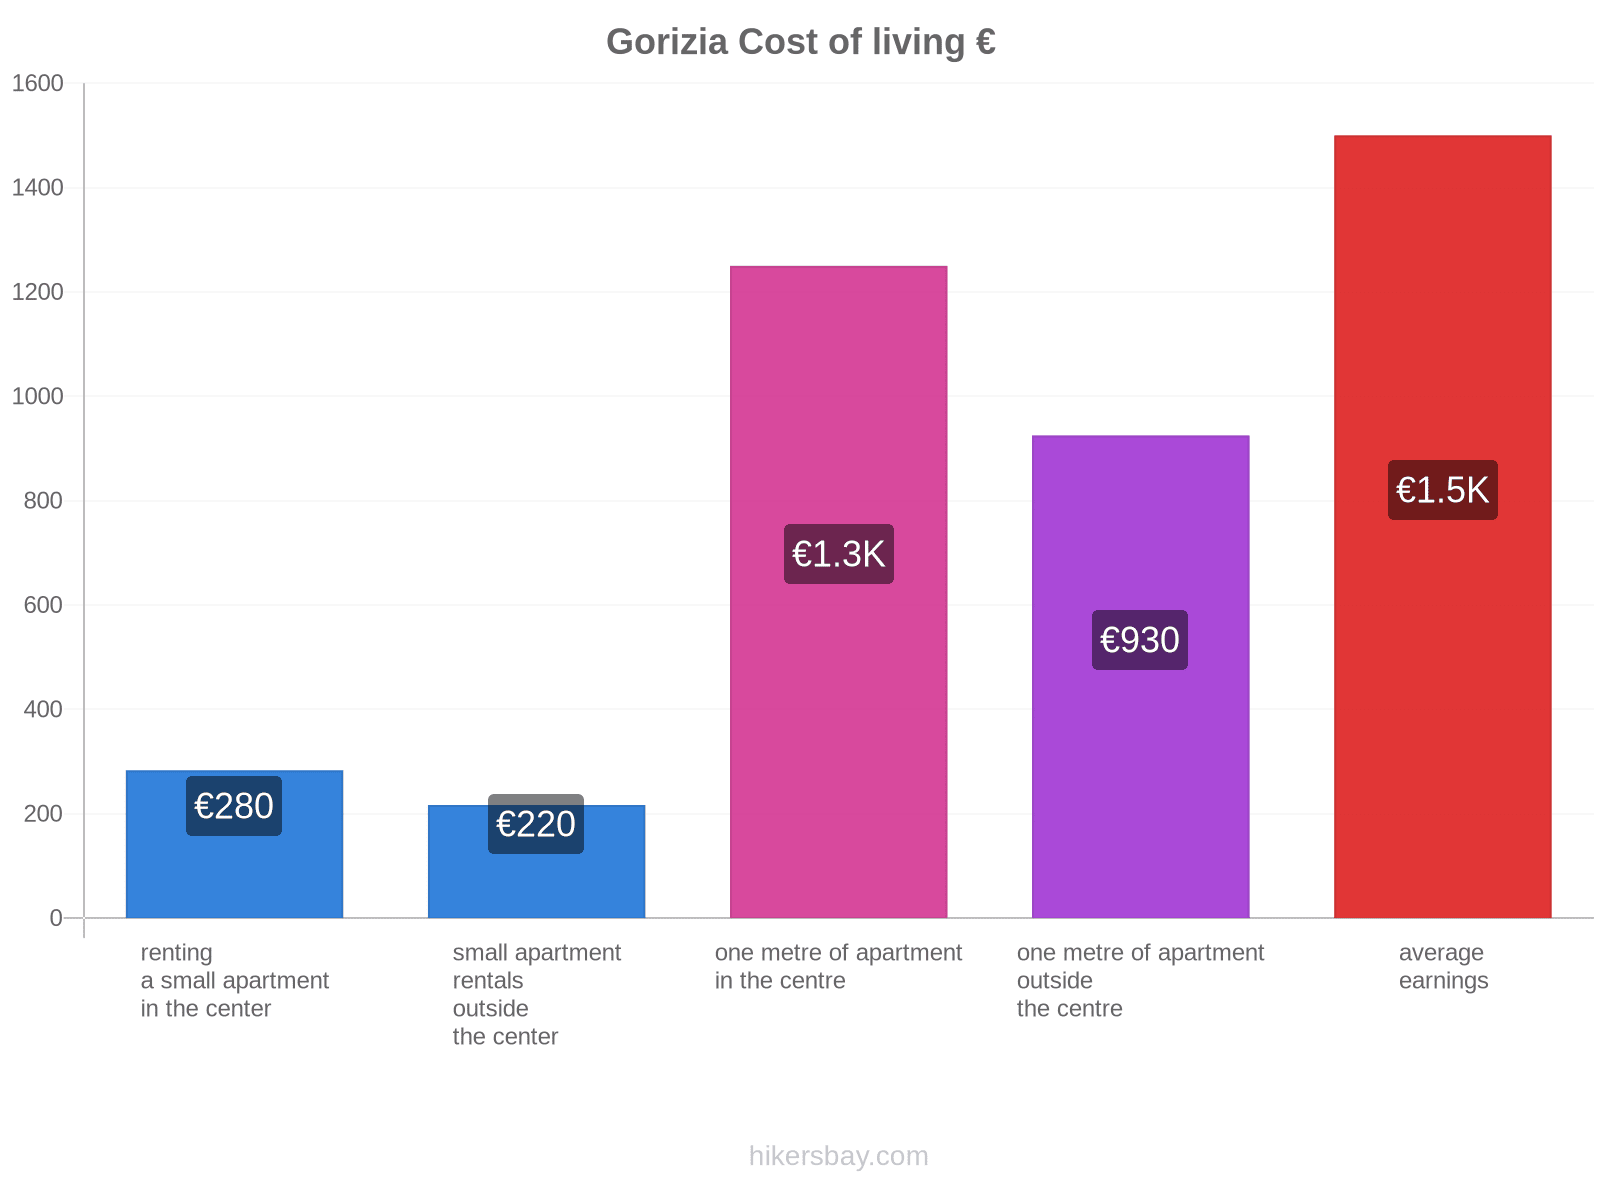 Gorizia cost of living hikersbay.com